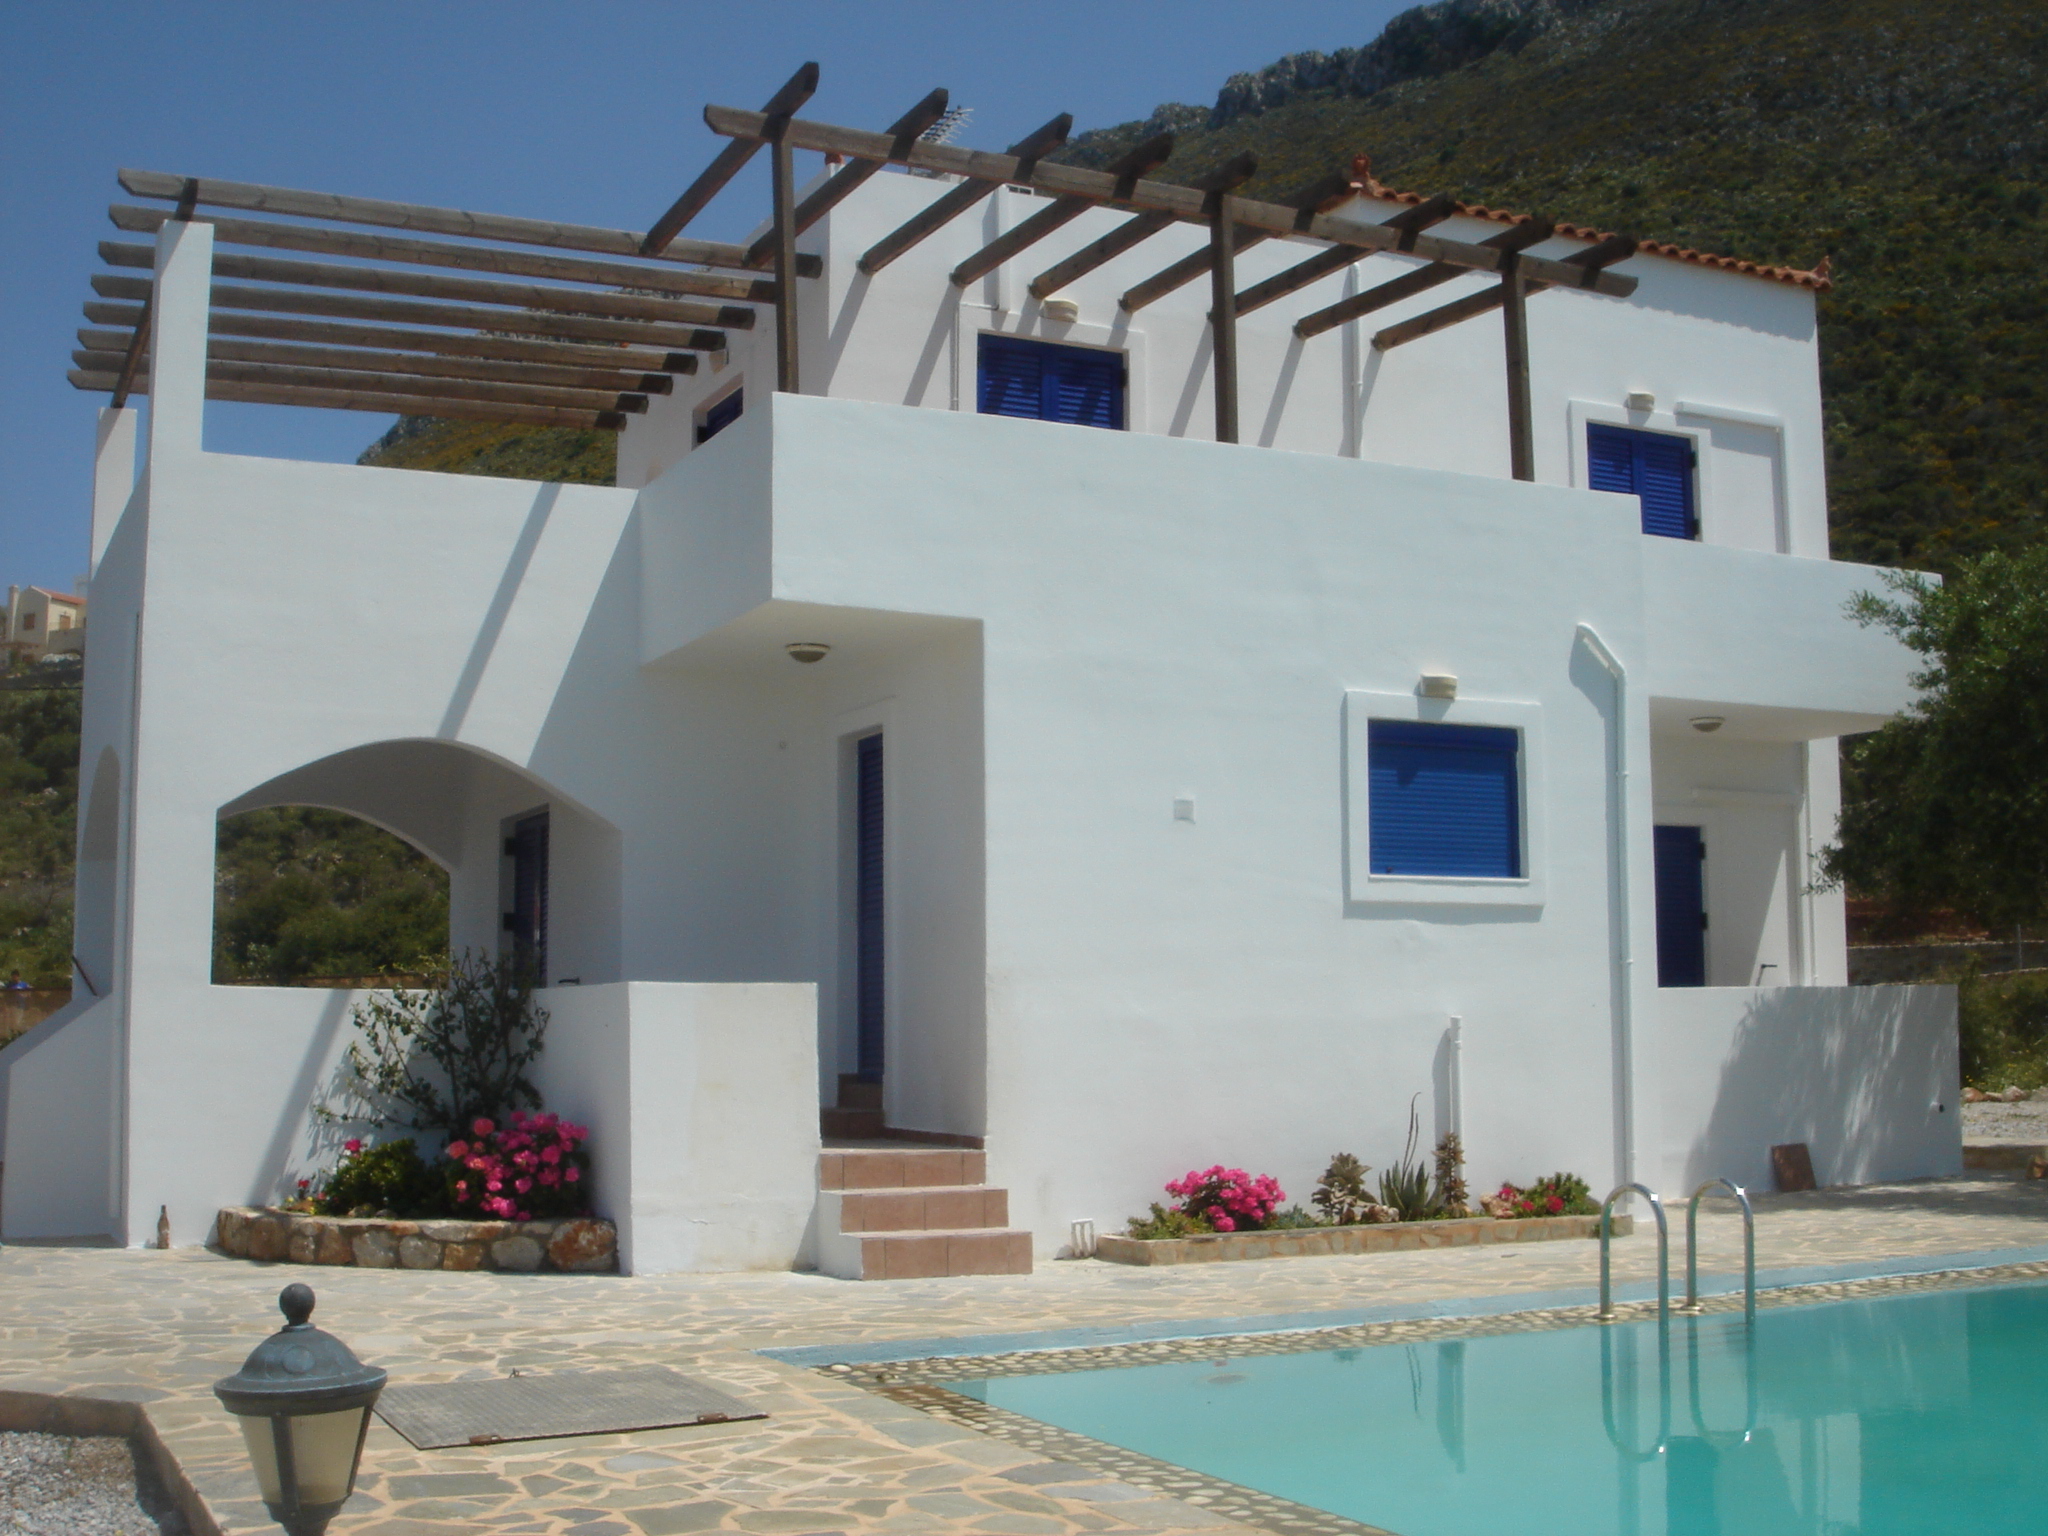 Building Styles | Traditional | Cretan Homes | Stone Villas | Greece